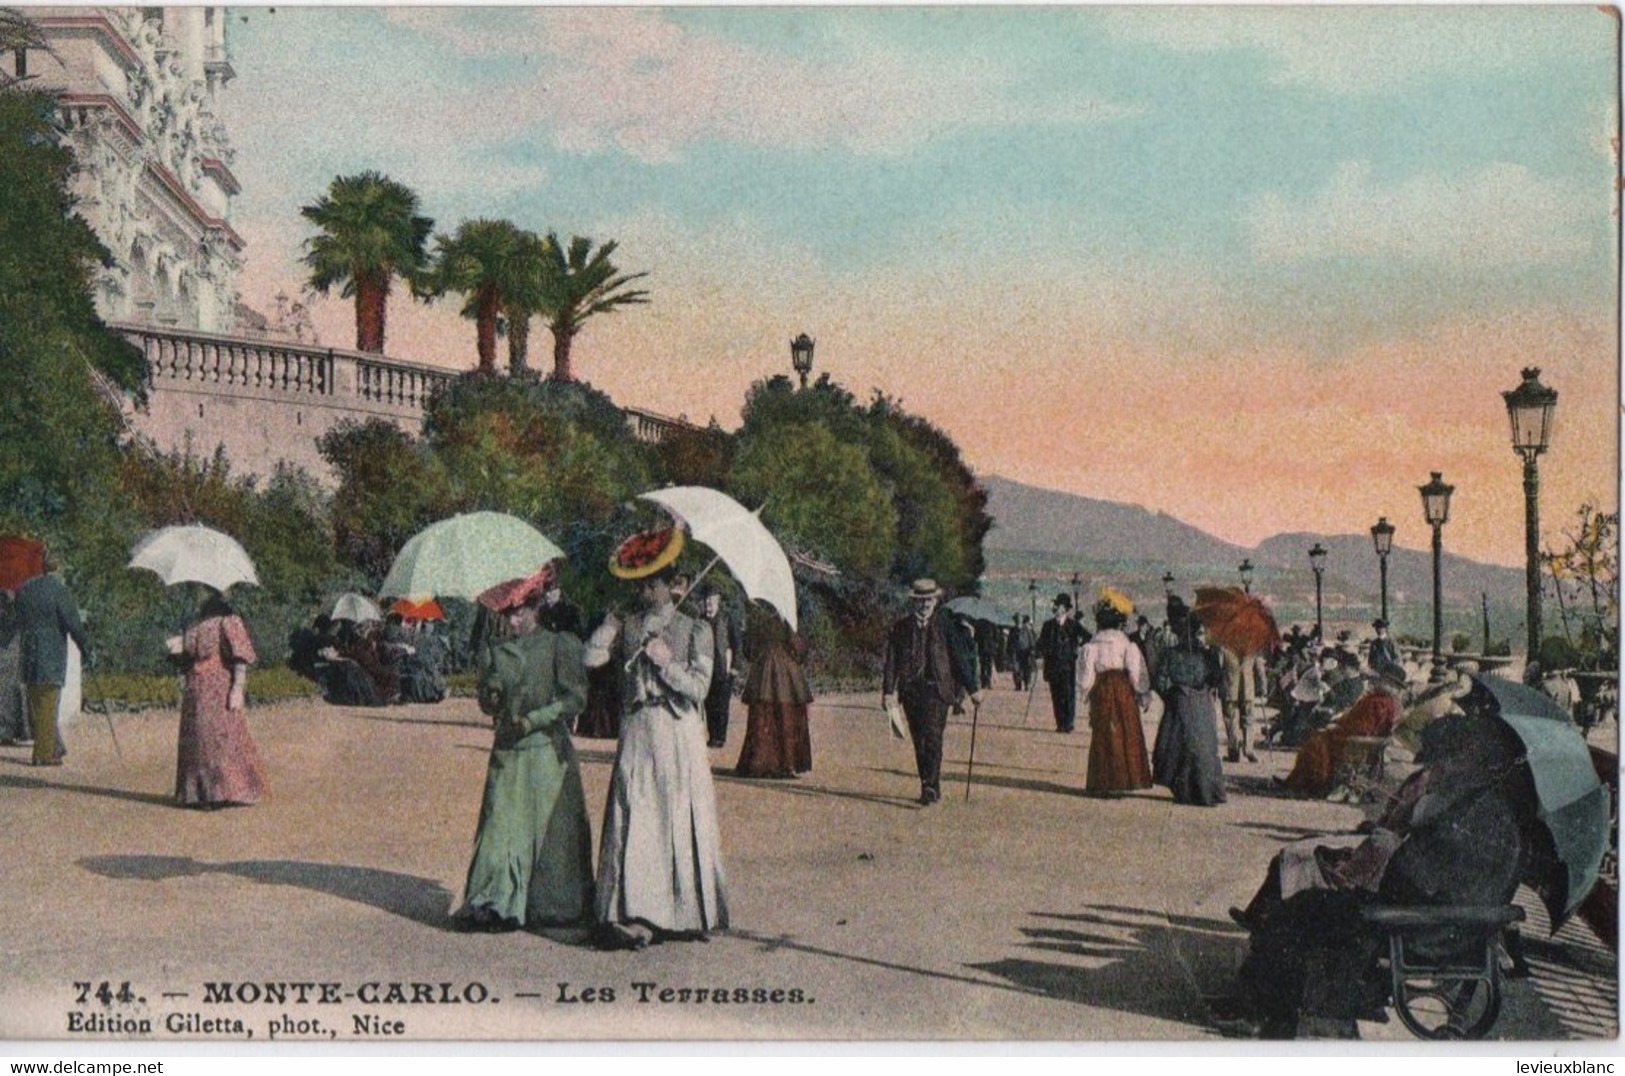 Carte Postale Ancienne /Les Terrasses / MONTE-CARLO/ Monaco/ Vers1900-1930  CPDIV283 - Monte-Carlo